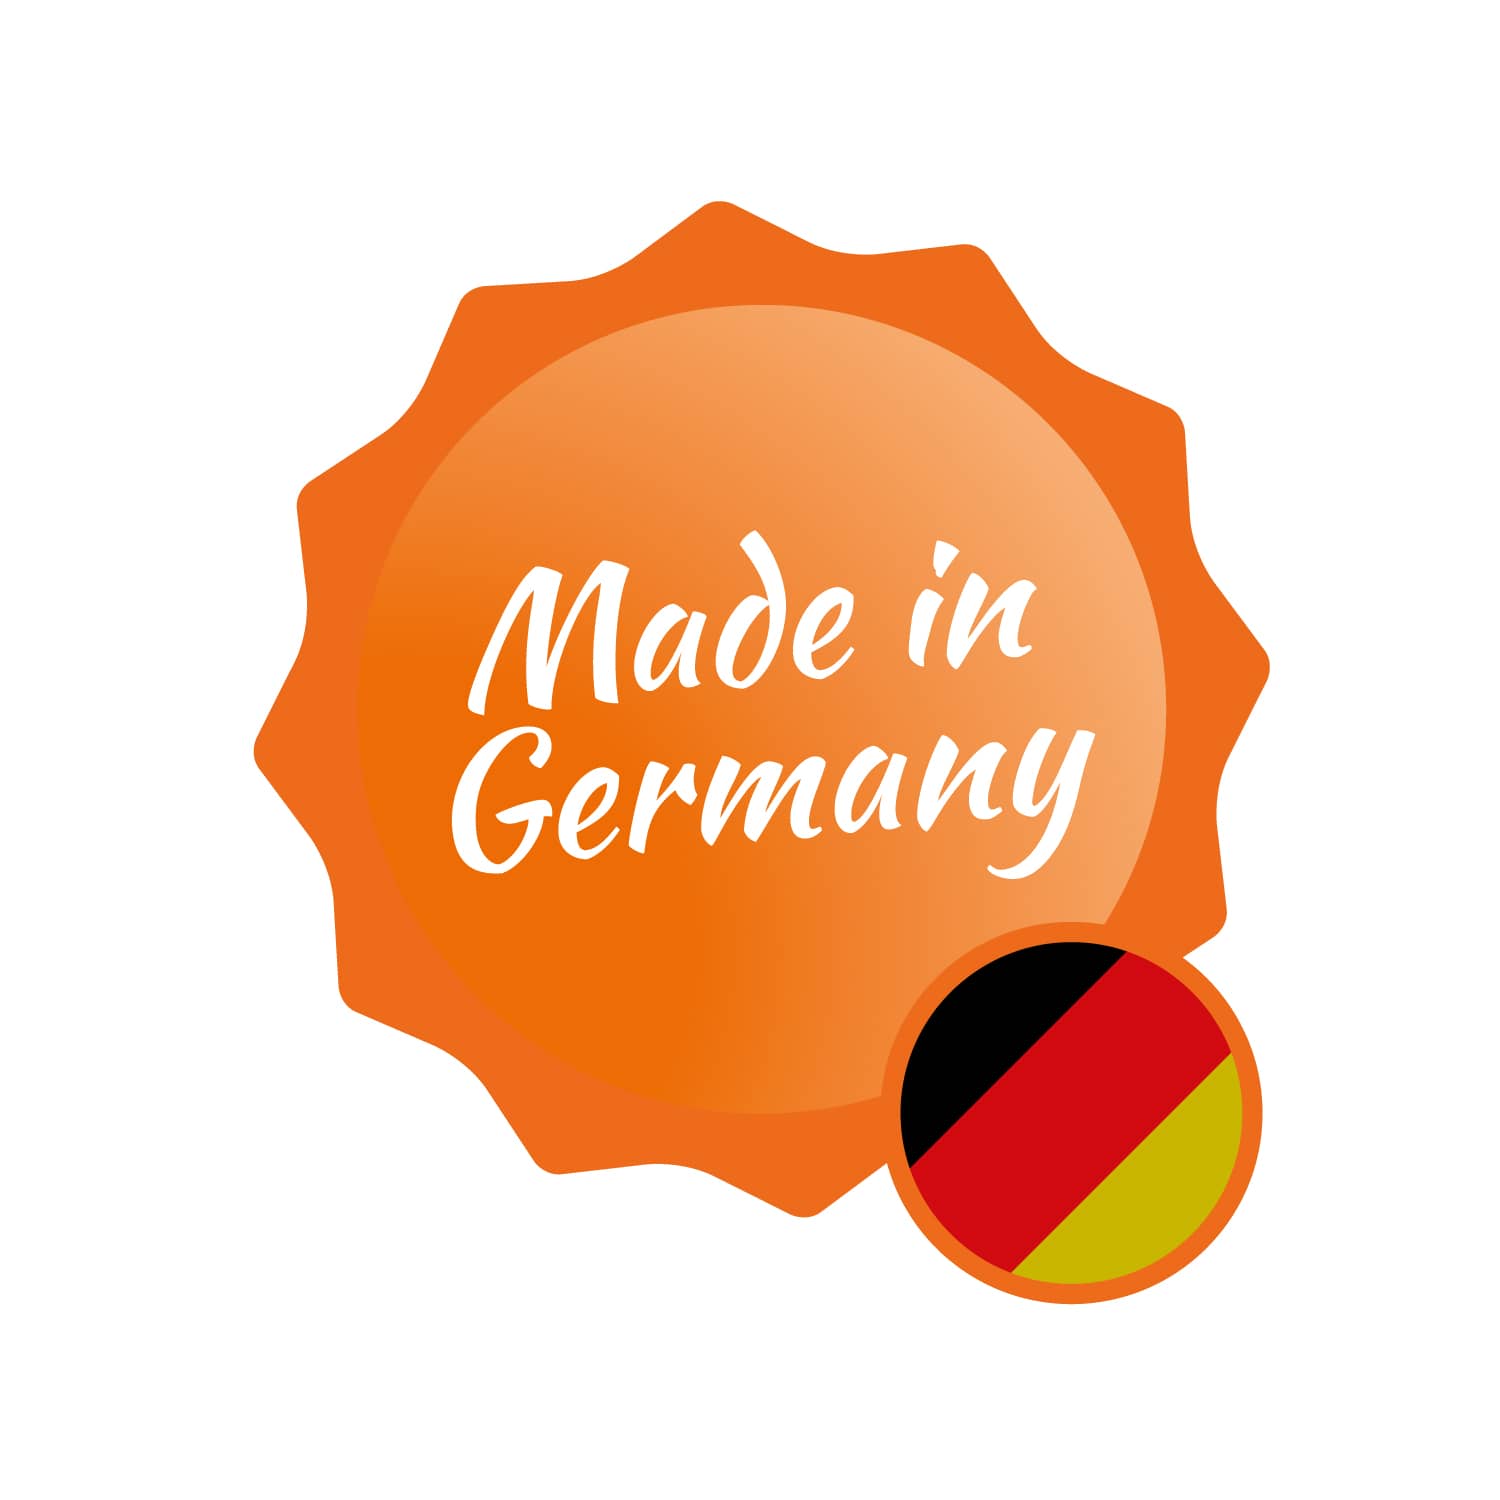 Stichdegen ohne Klappscharnier - Made in Germany